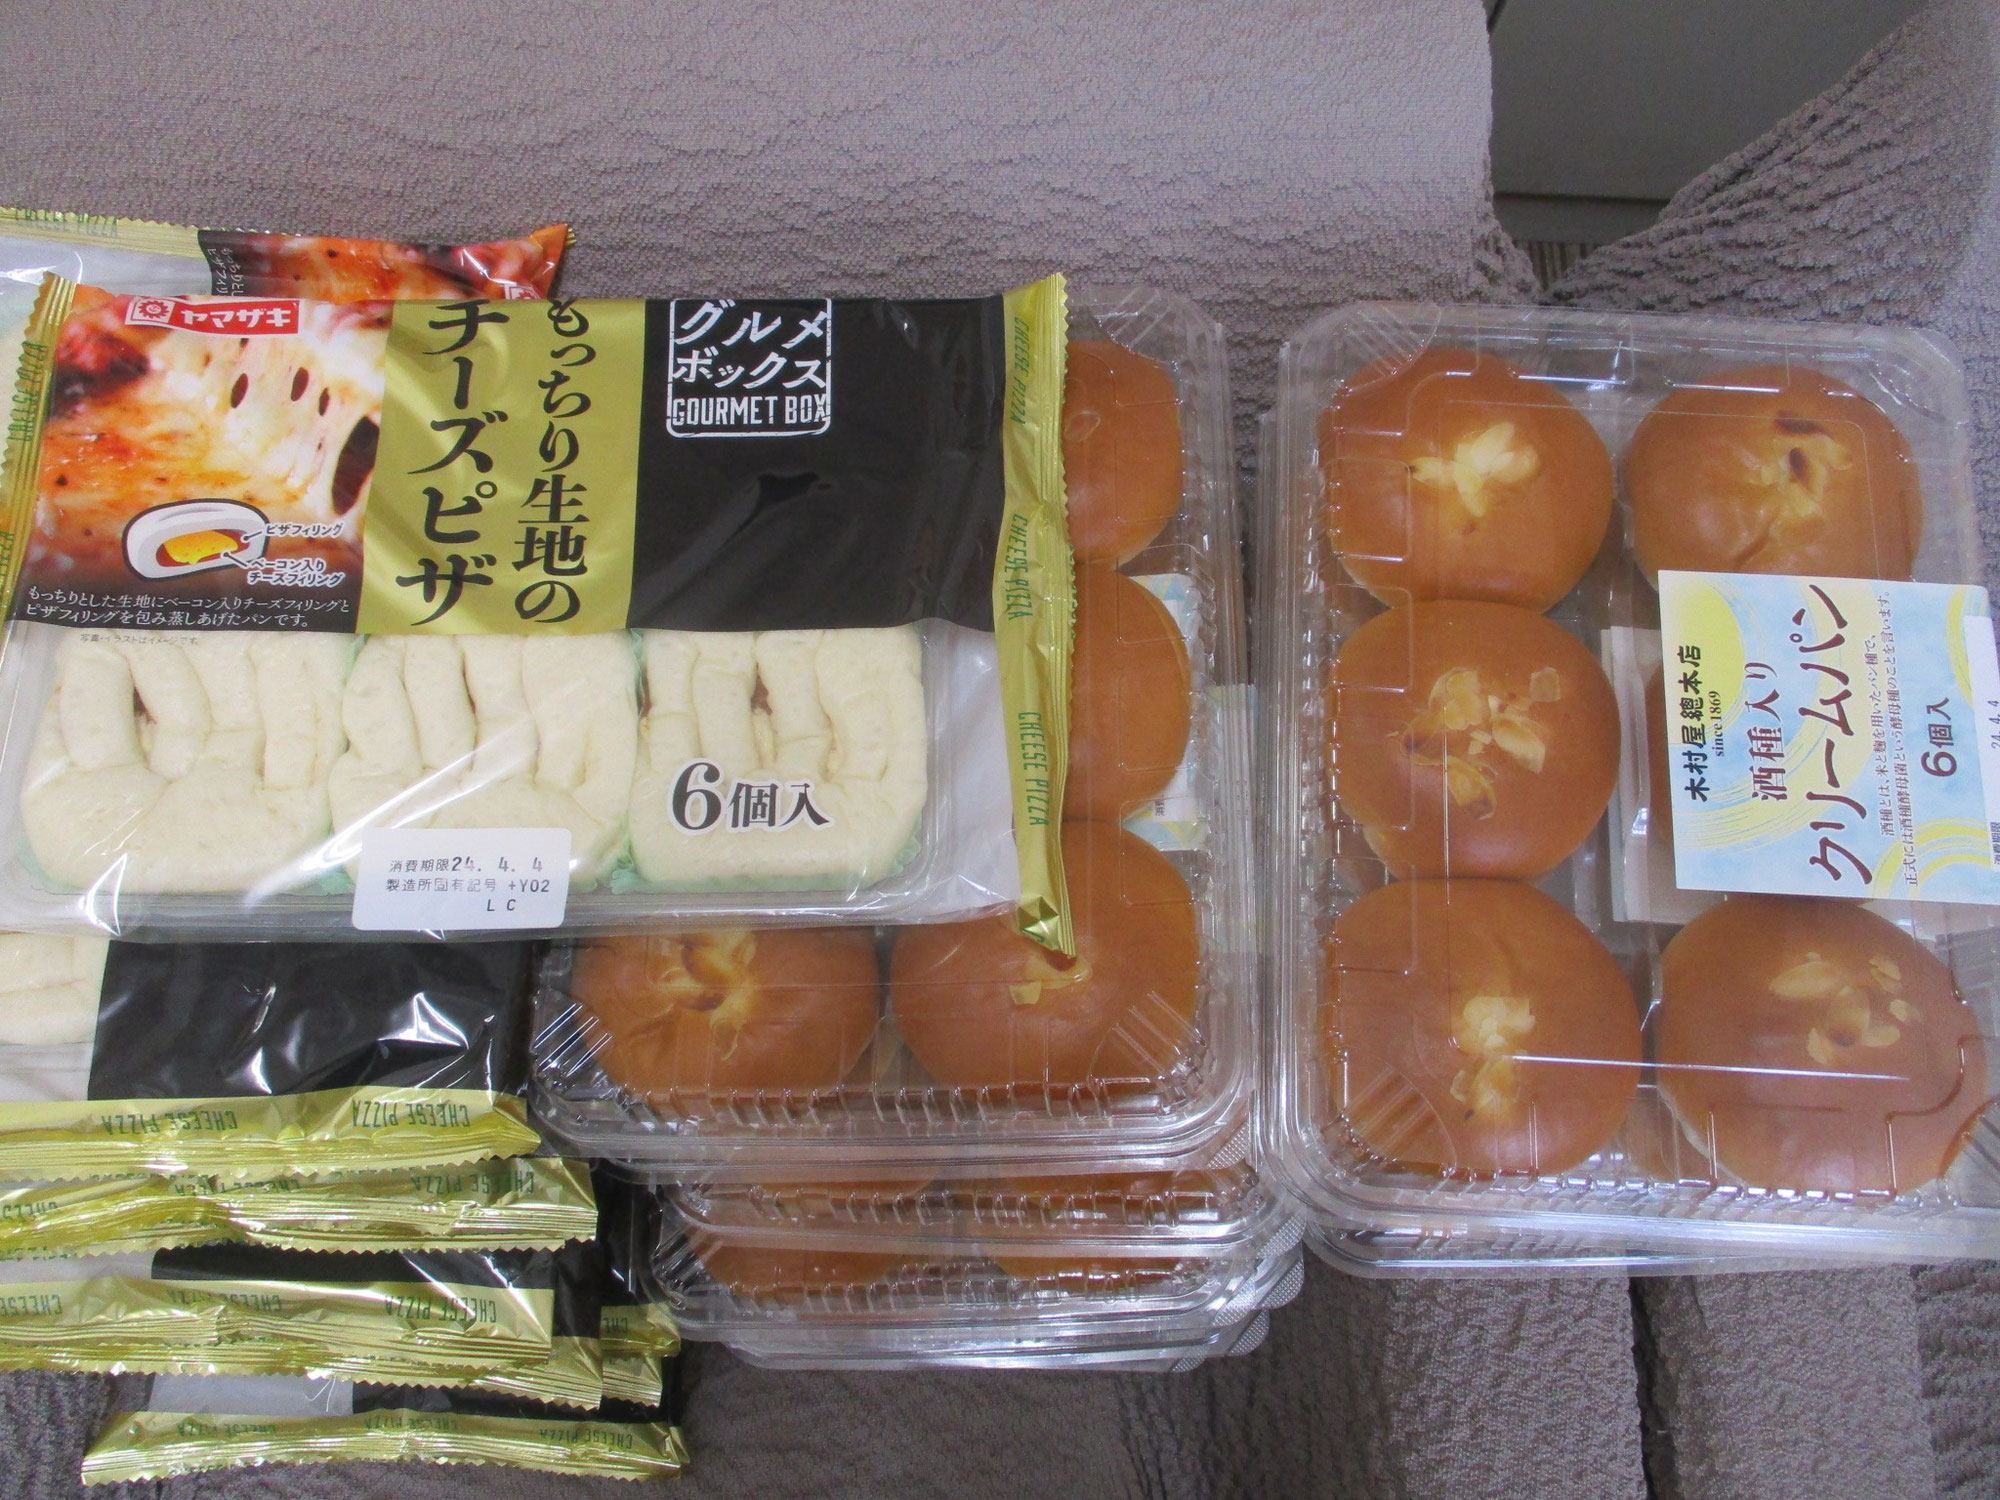 コストコジャパン様よりパンのご寄贈をいただきました。